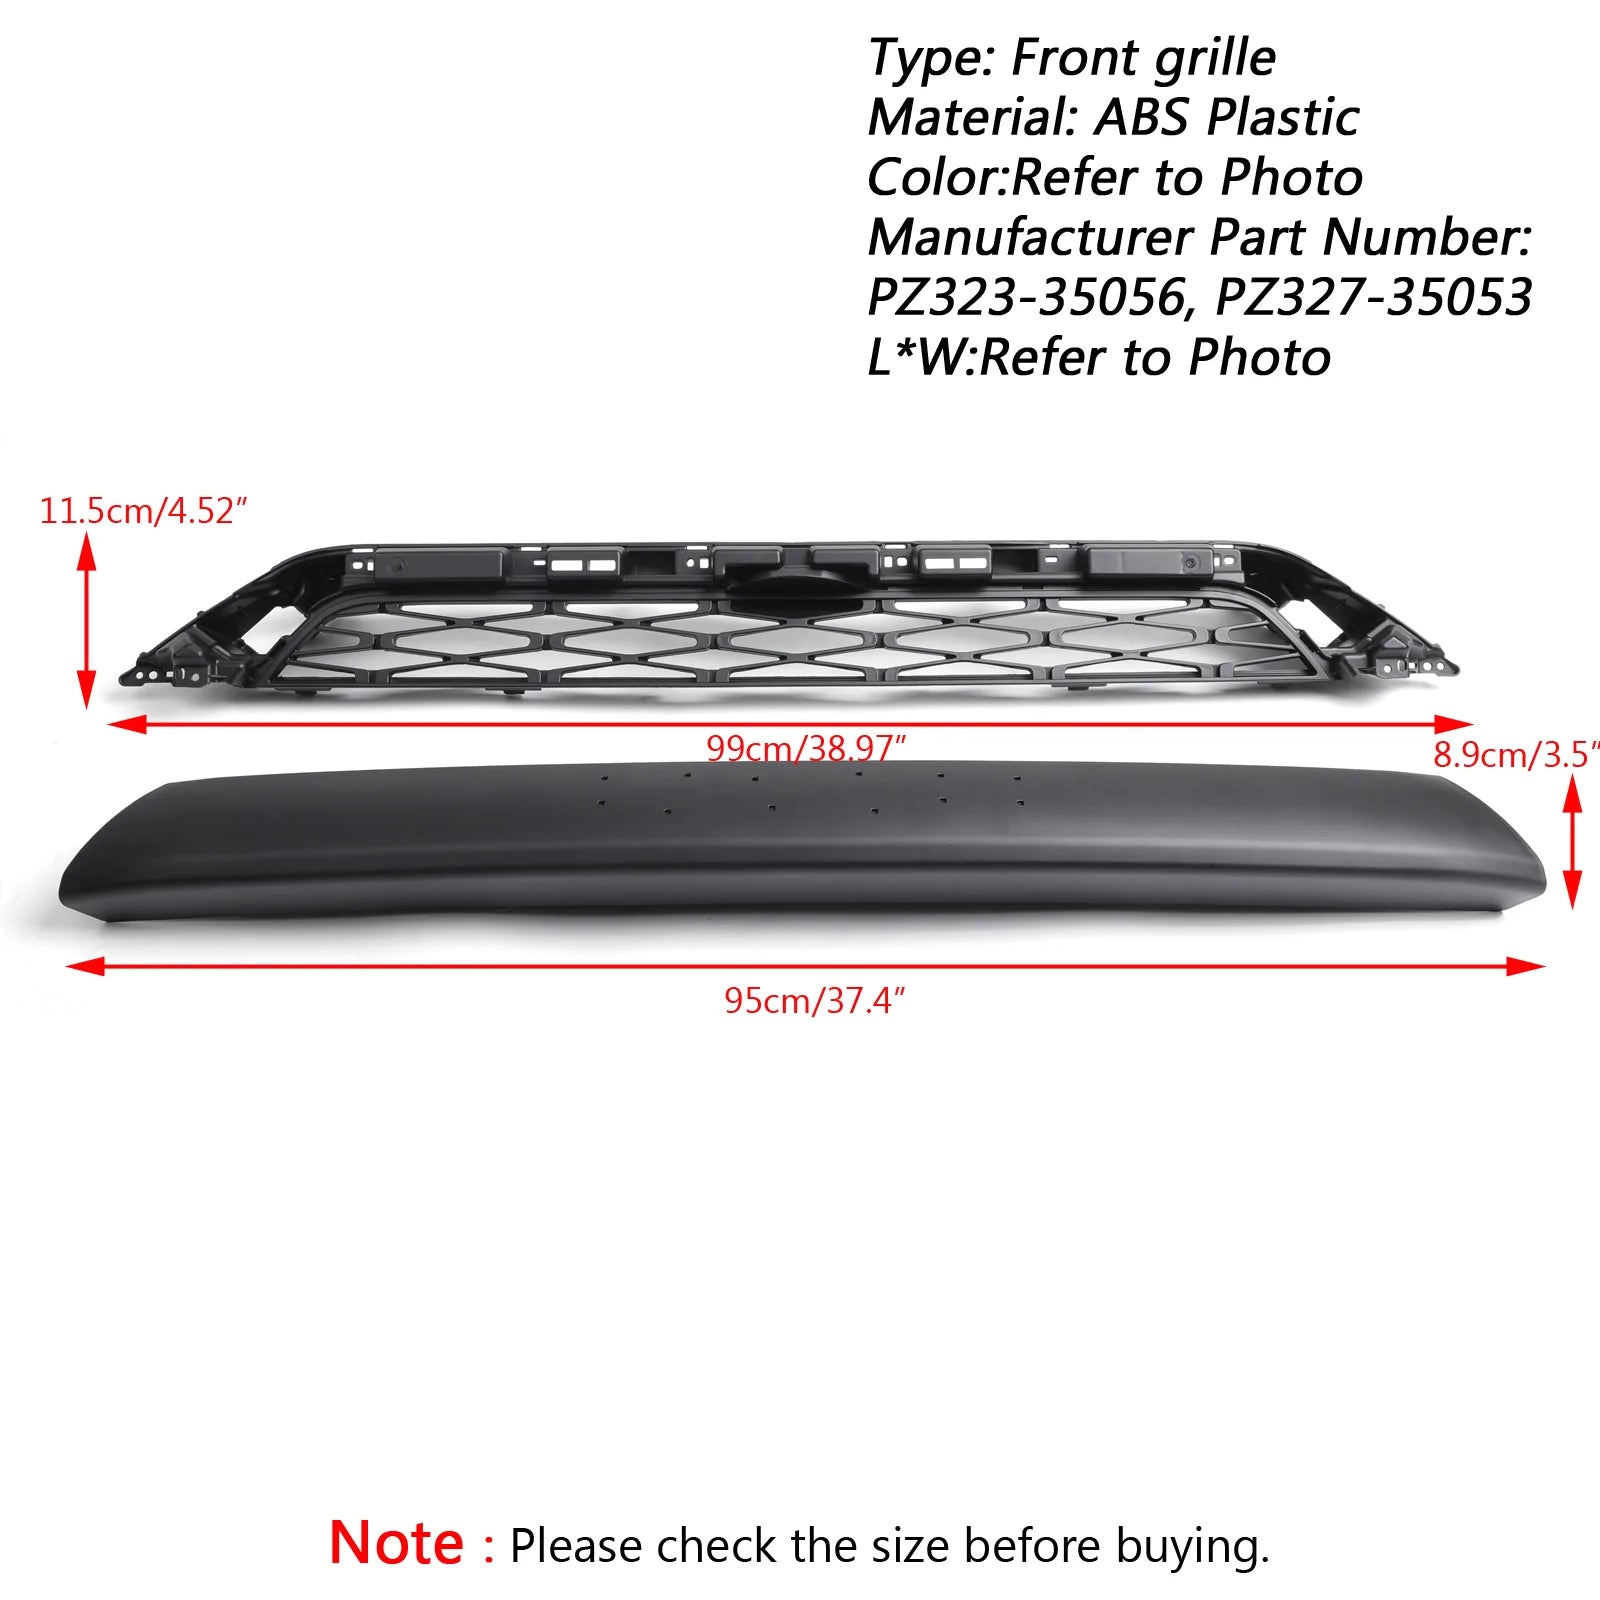 Toyota 4Runner | 2014-2019 | Grille TRD PRO | 2 pièces | Grille de pare-chocs avant | Noir mat + lettre Toyota